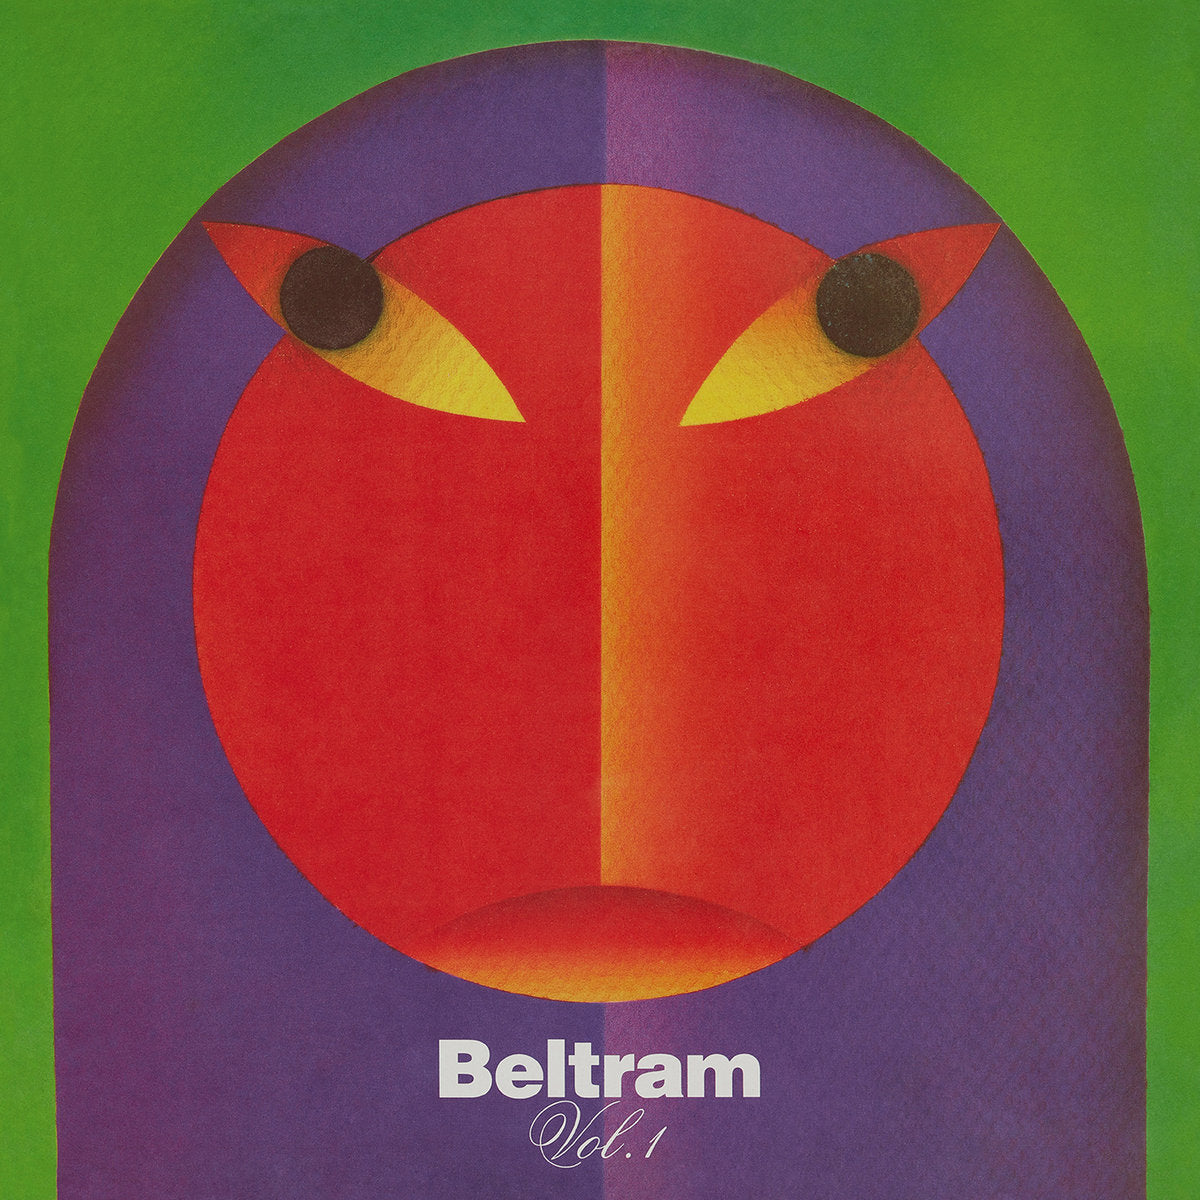 Joey Beltram - Beltram Volume 1 (Remasterizado) [R&S]